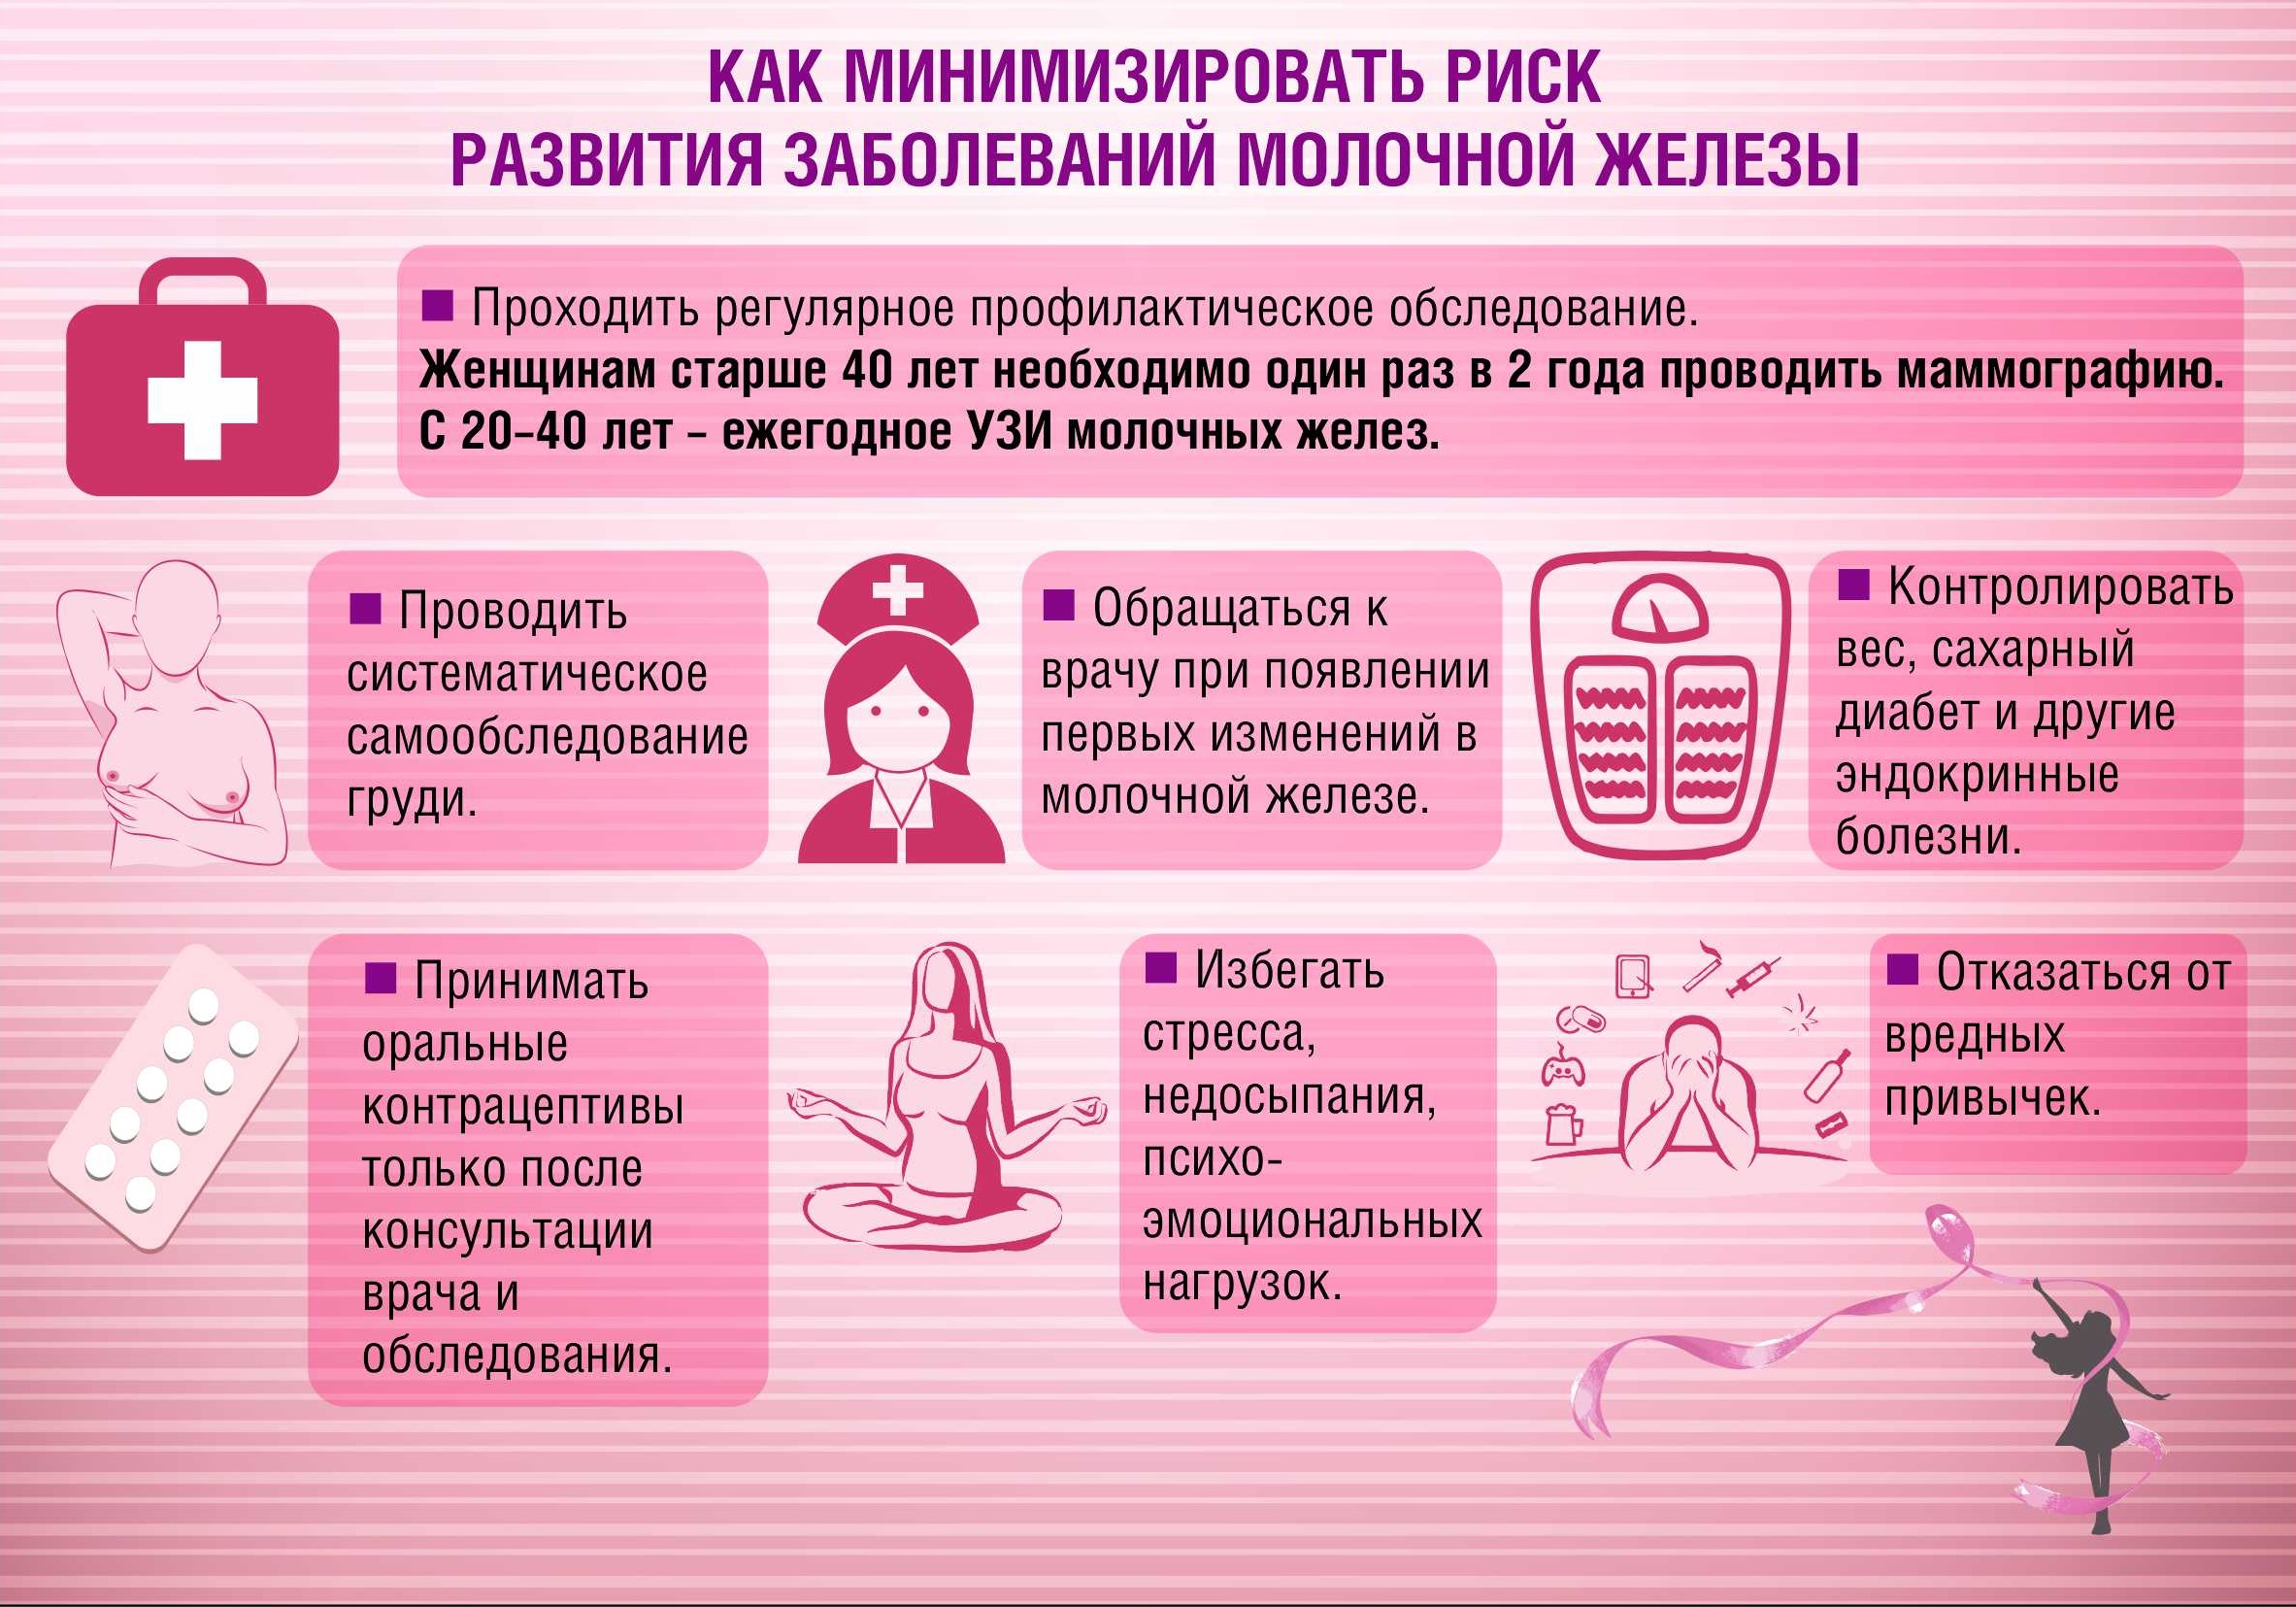 Всемирный день борьбы с раком груди | Оренбургский областной центр  общественного здоровья и медицинской профилактики